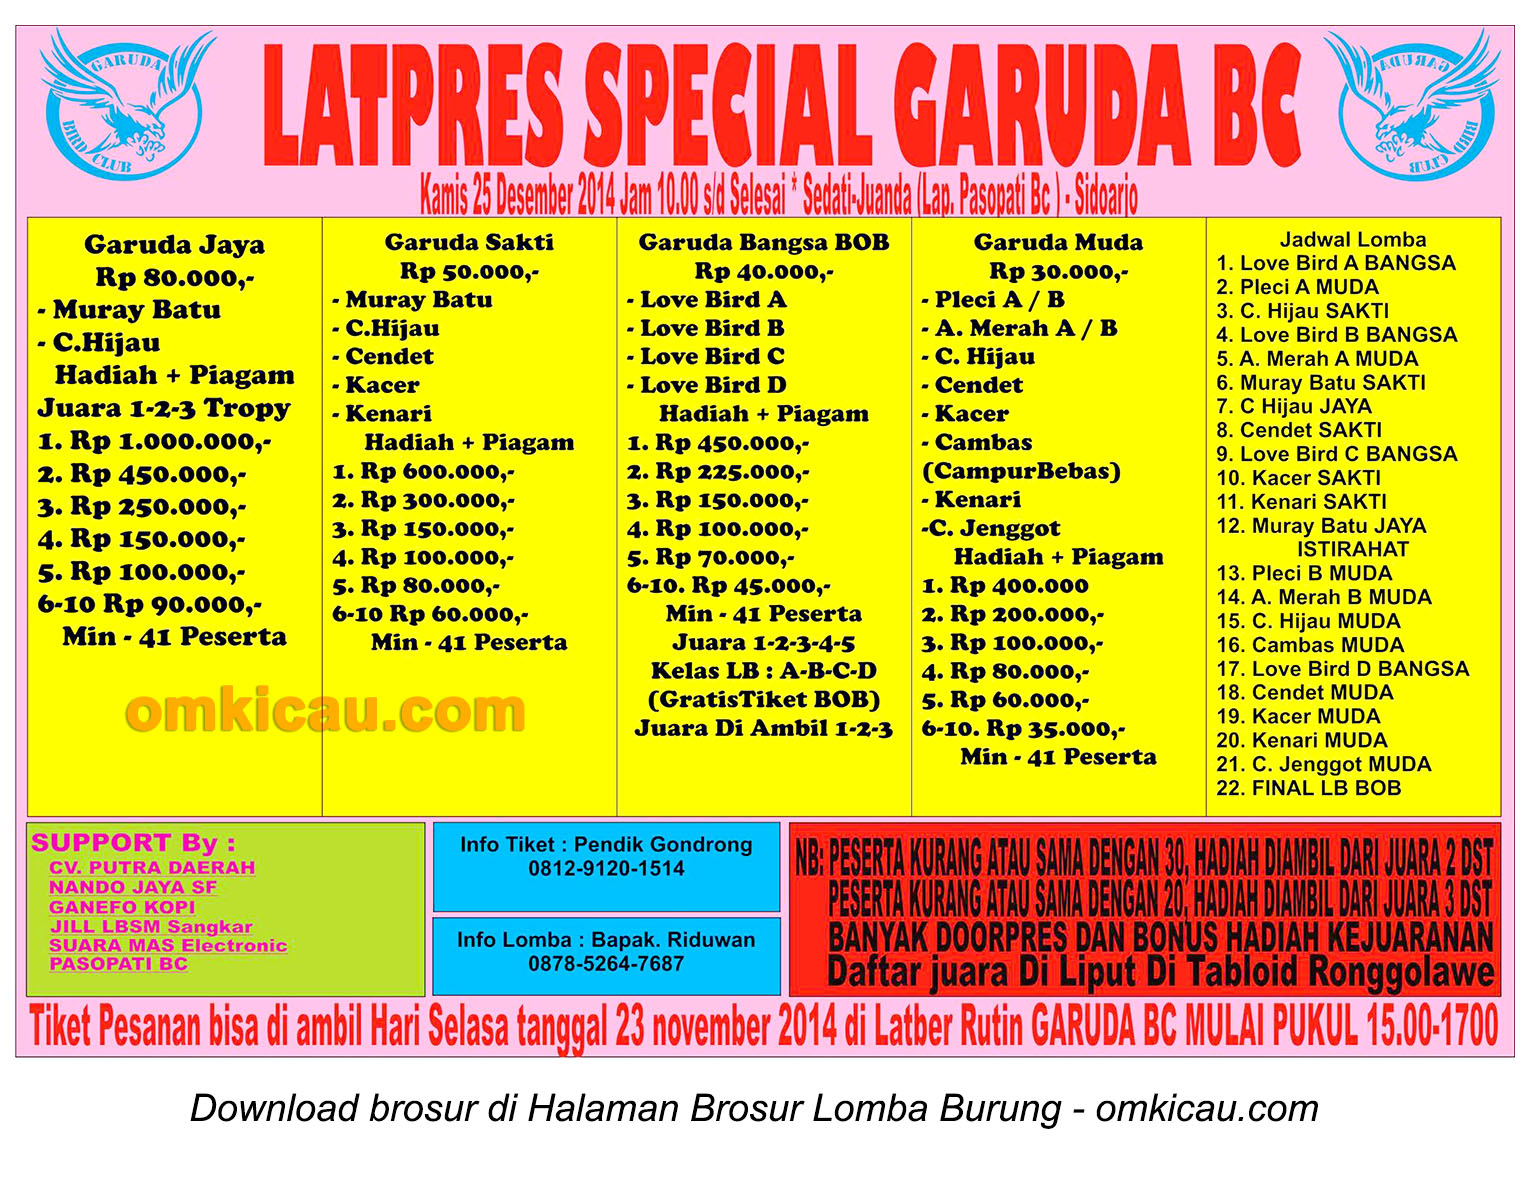 Brosur Latpres Spesial Garuda BC, Sidoarjo, 25 Desember 2014